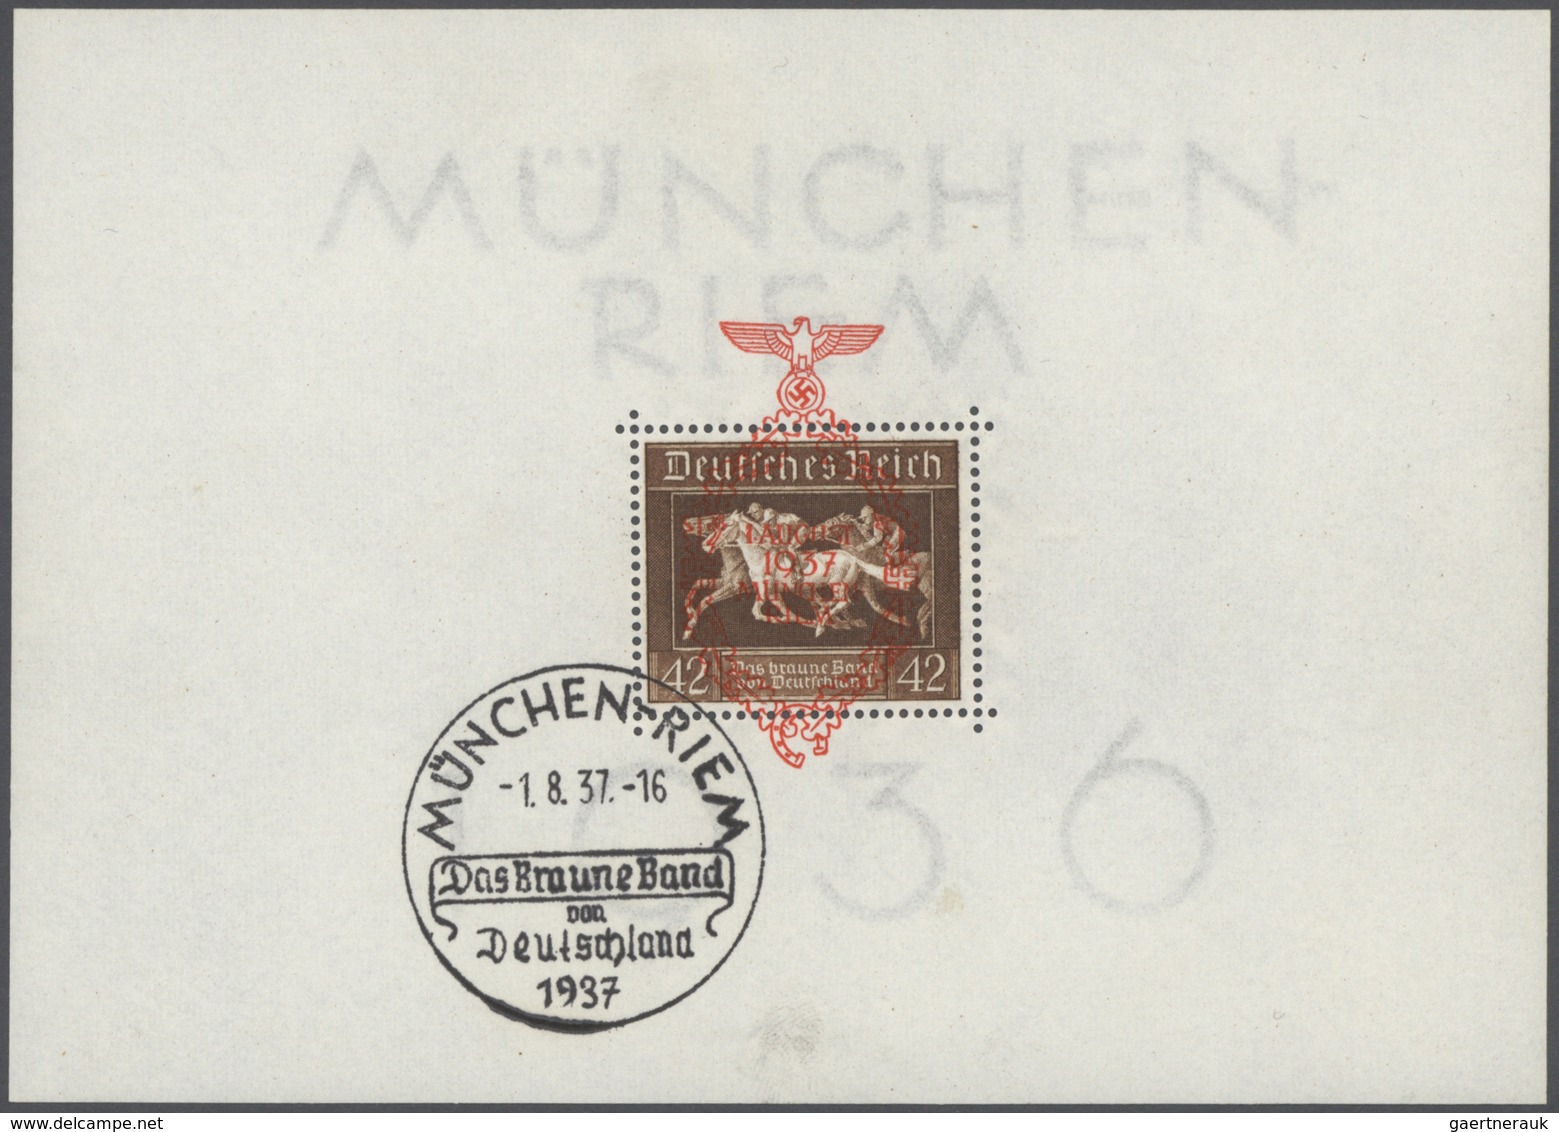 31162 Altdeutschland und Deutsches Reich: 1850/1945, Steckkartenposten ab Altdeutschland in unterschiedlic